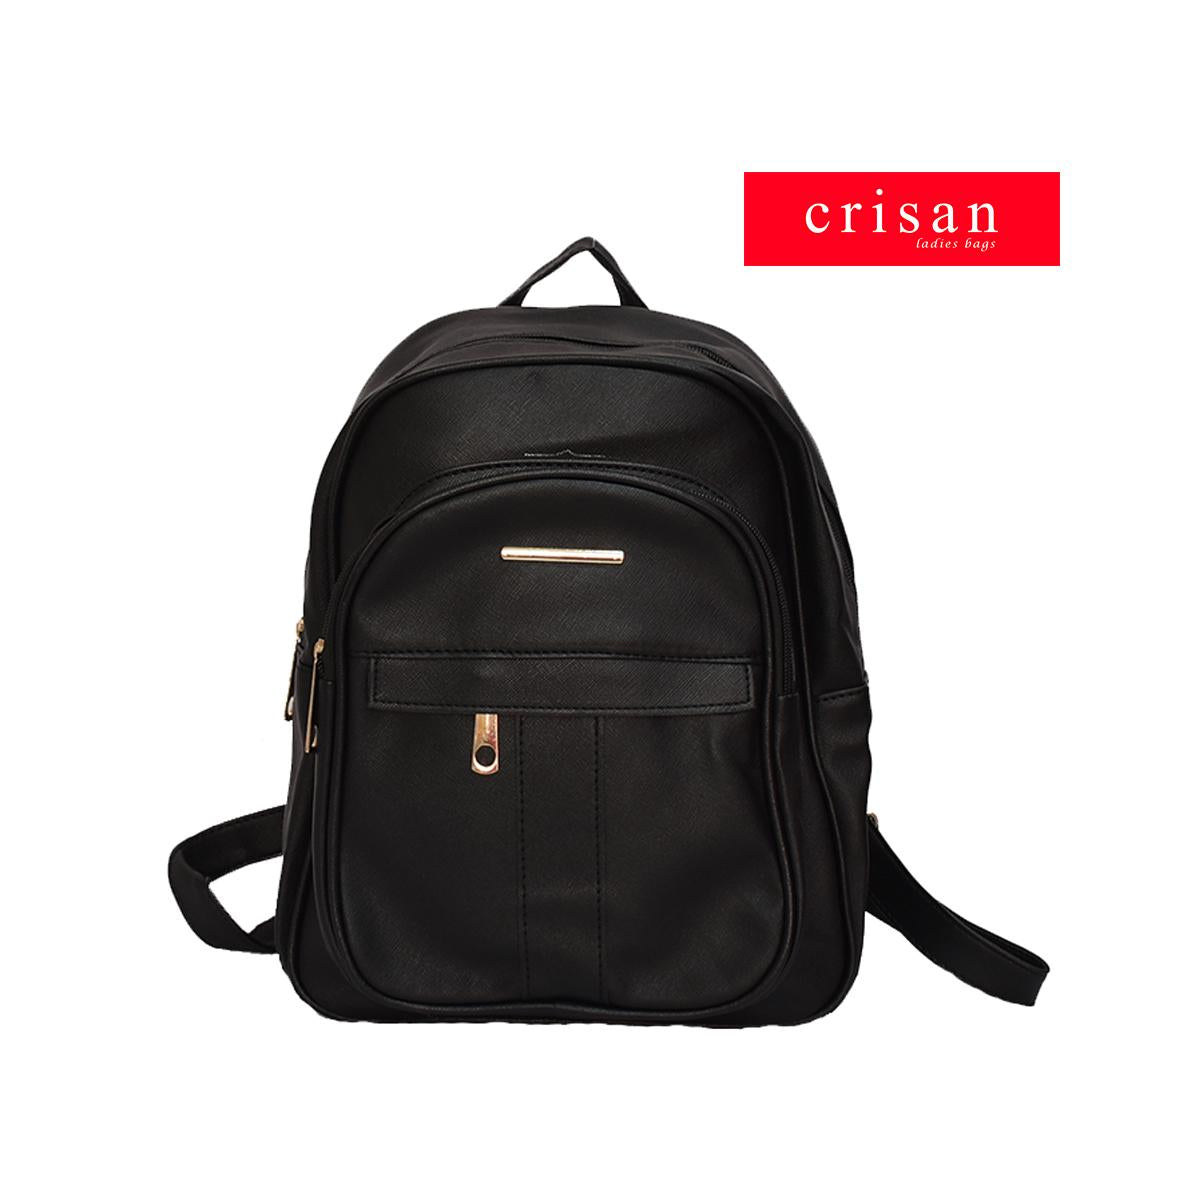 Crisan Bags - Willow - Backpack-Crisan bags